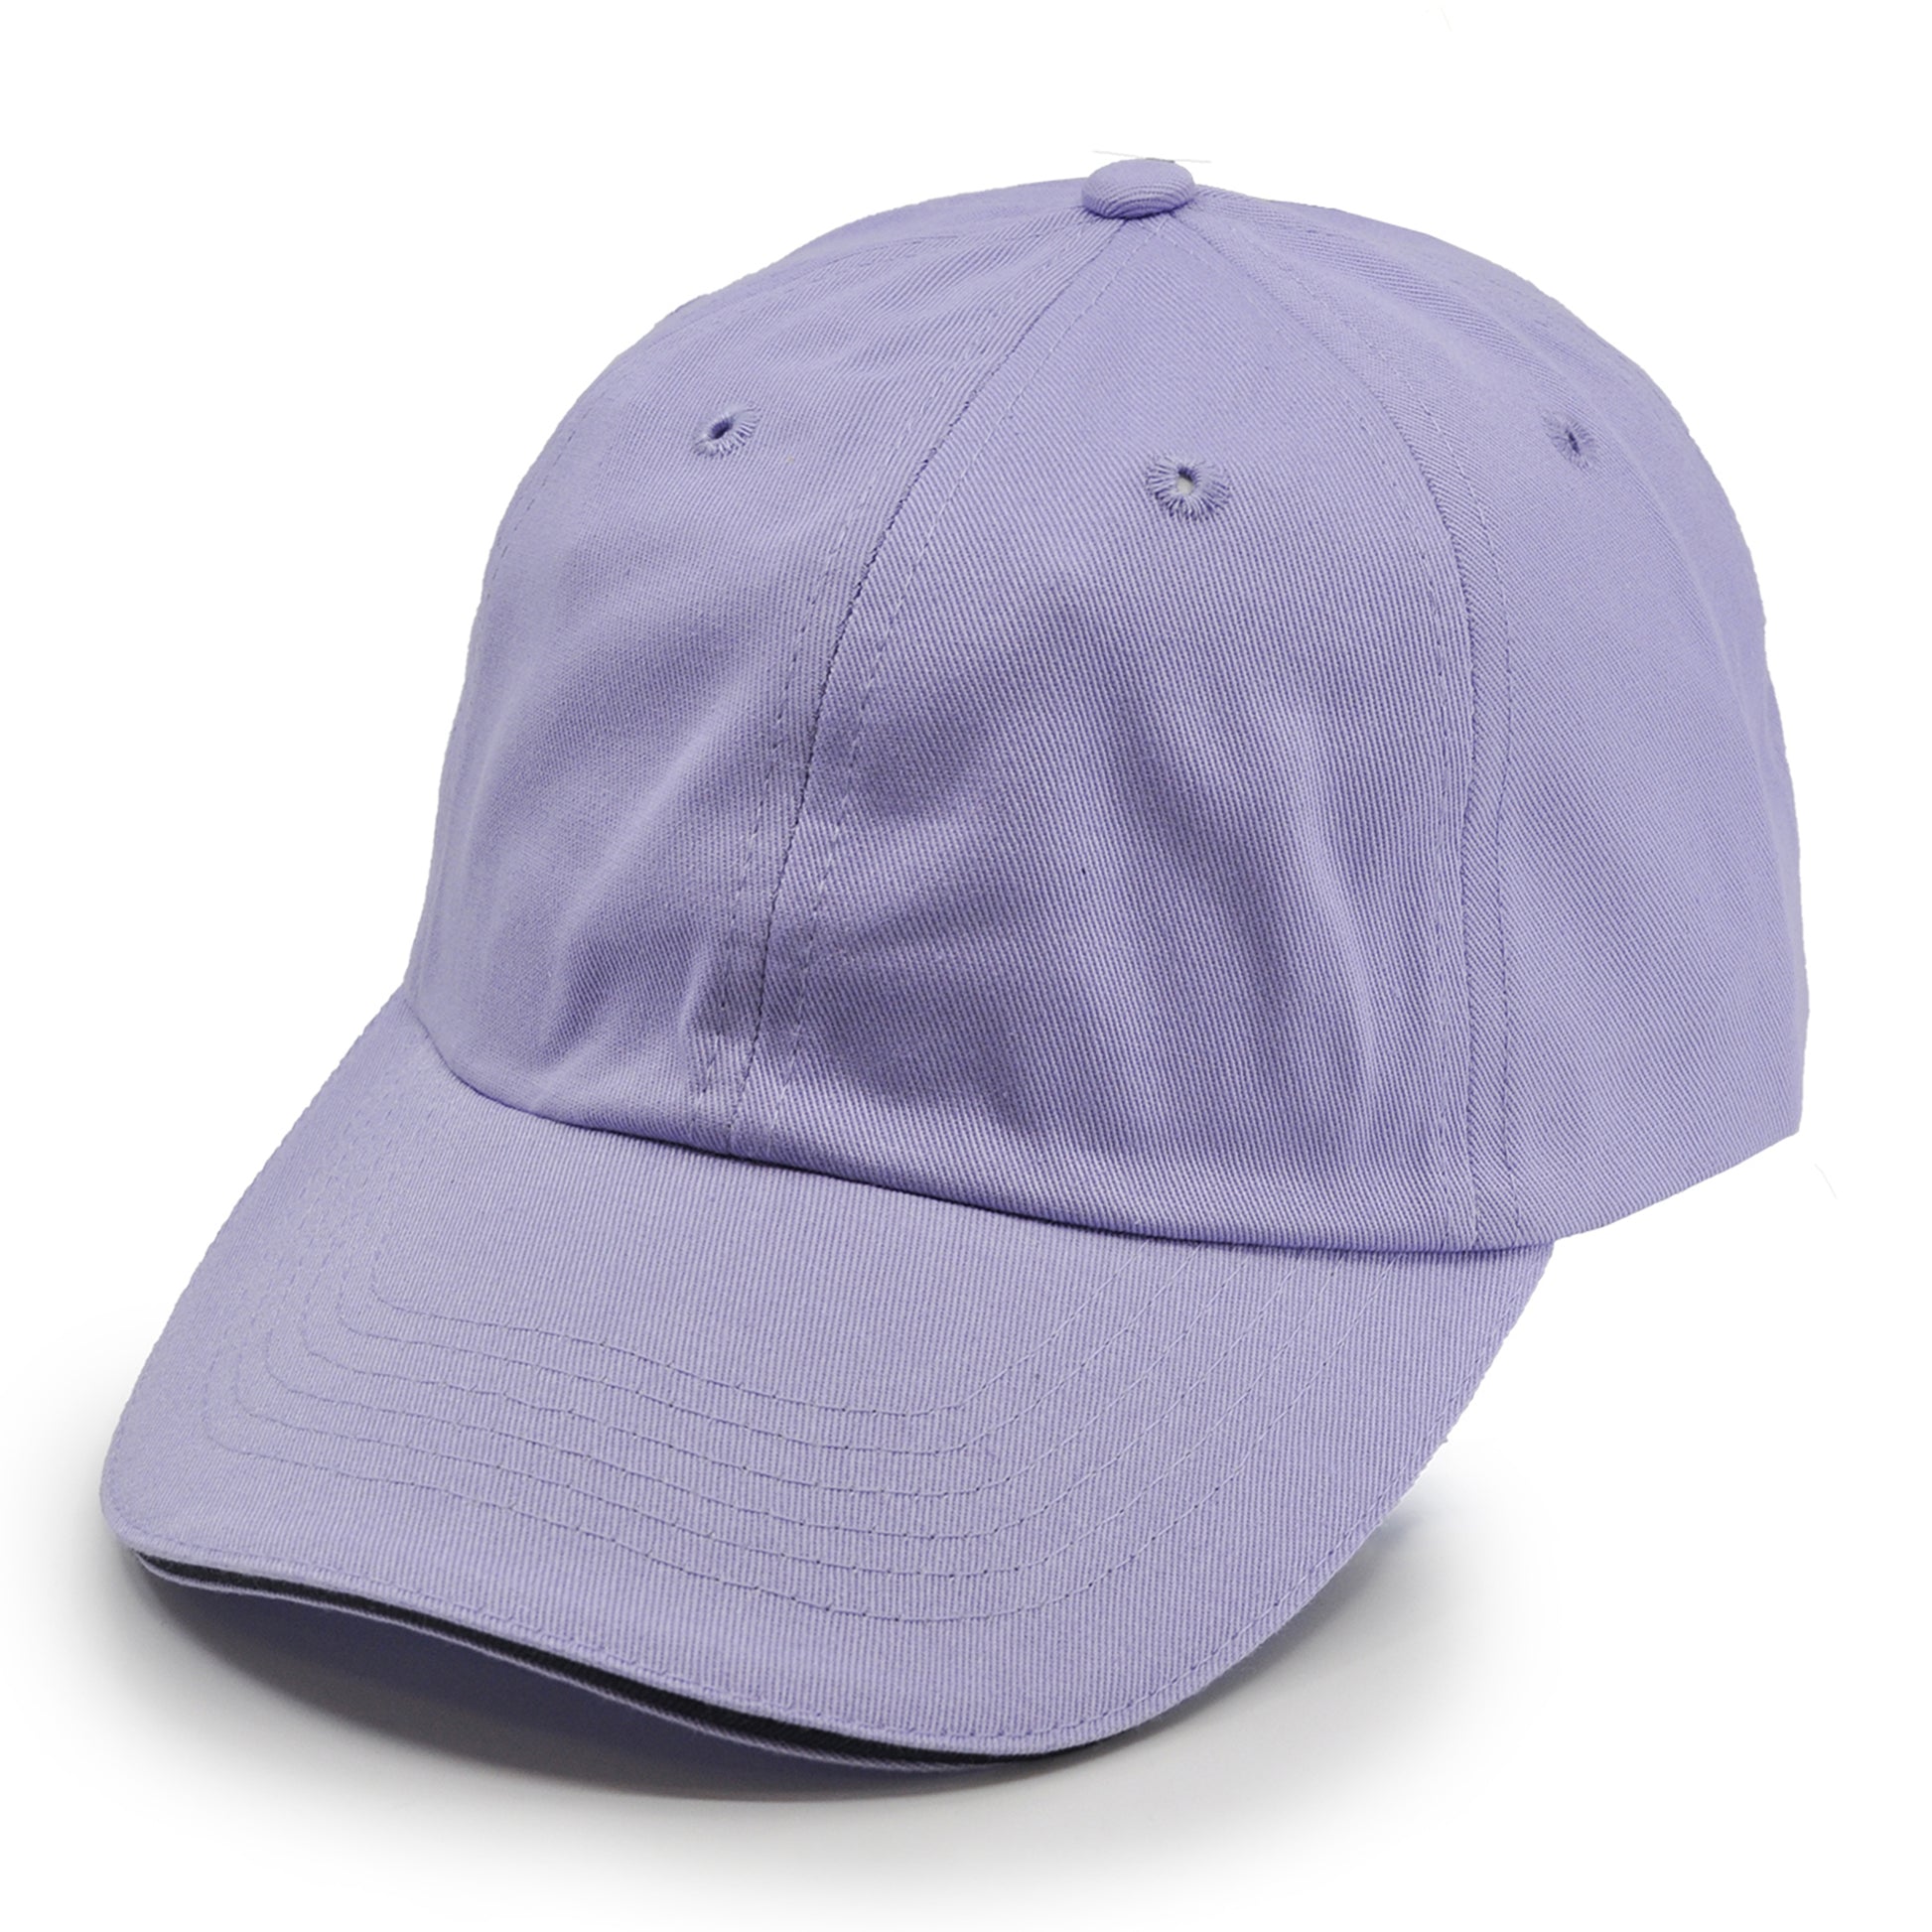 River Beach 100% Cotton Unisex Sports Cap, in color Lavender. Front View.